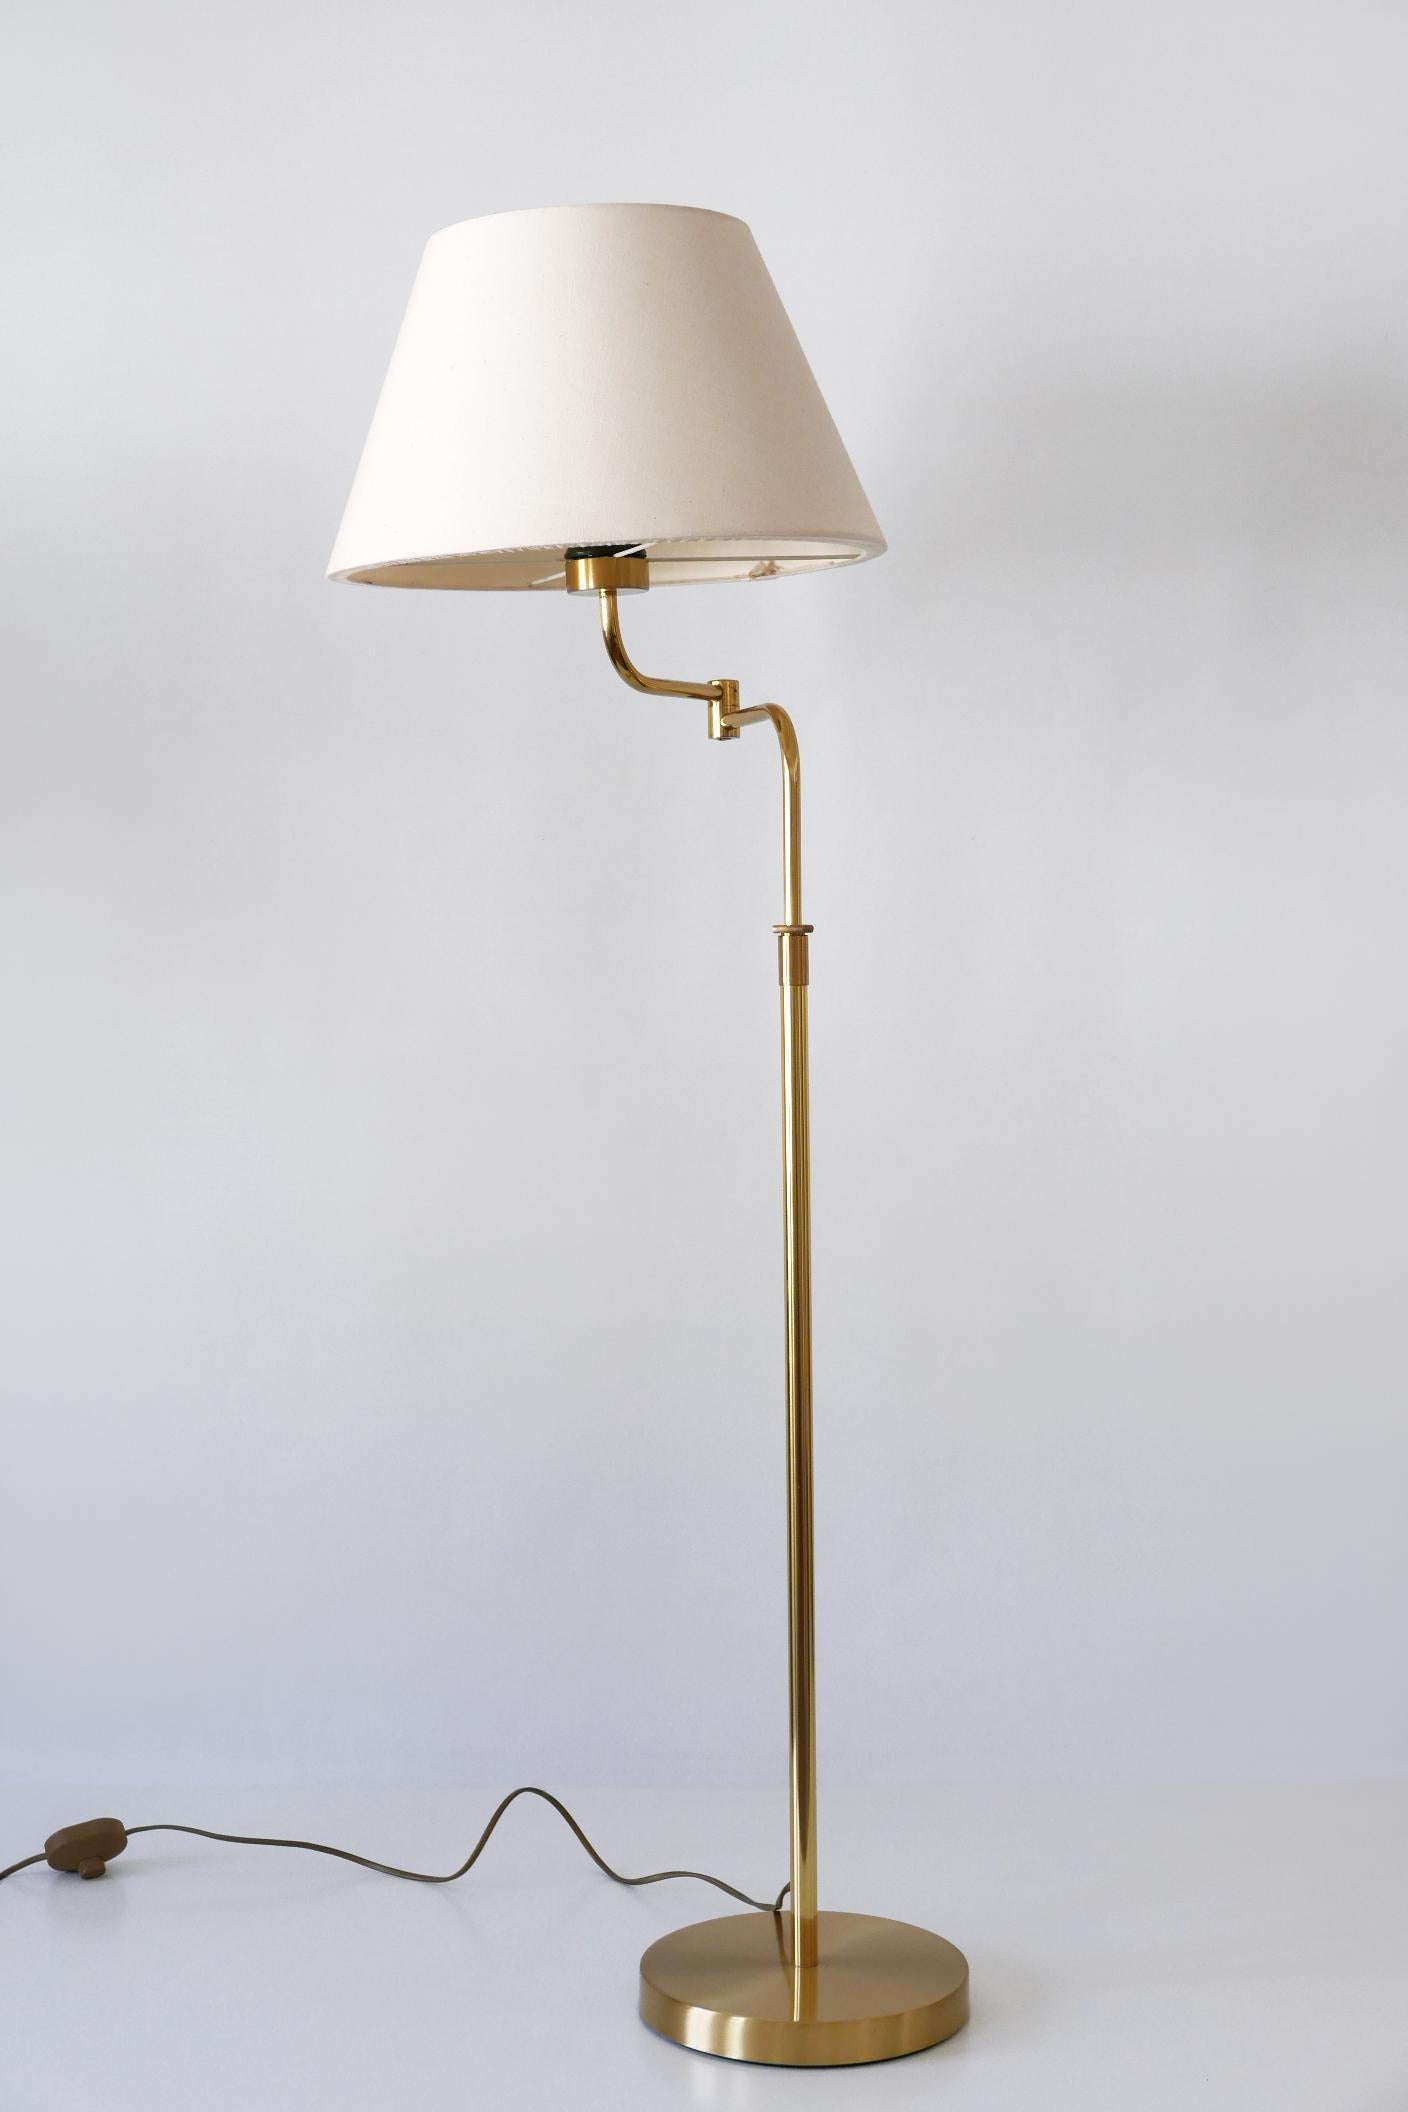 Adjustable Vintage Floor Lamp or Reading Light by Sölken Leuchten Germany 1980s For Sale 8